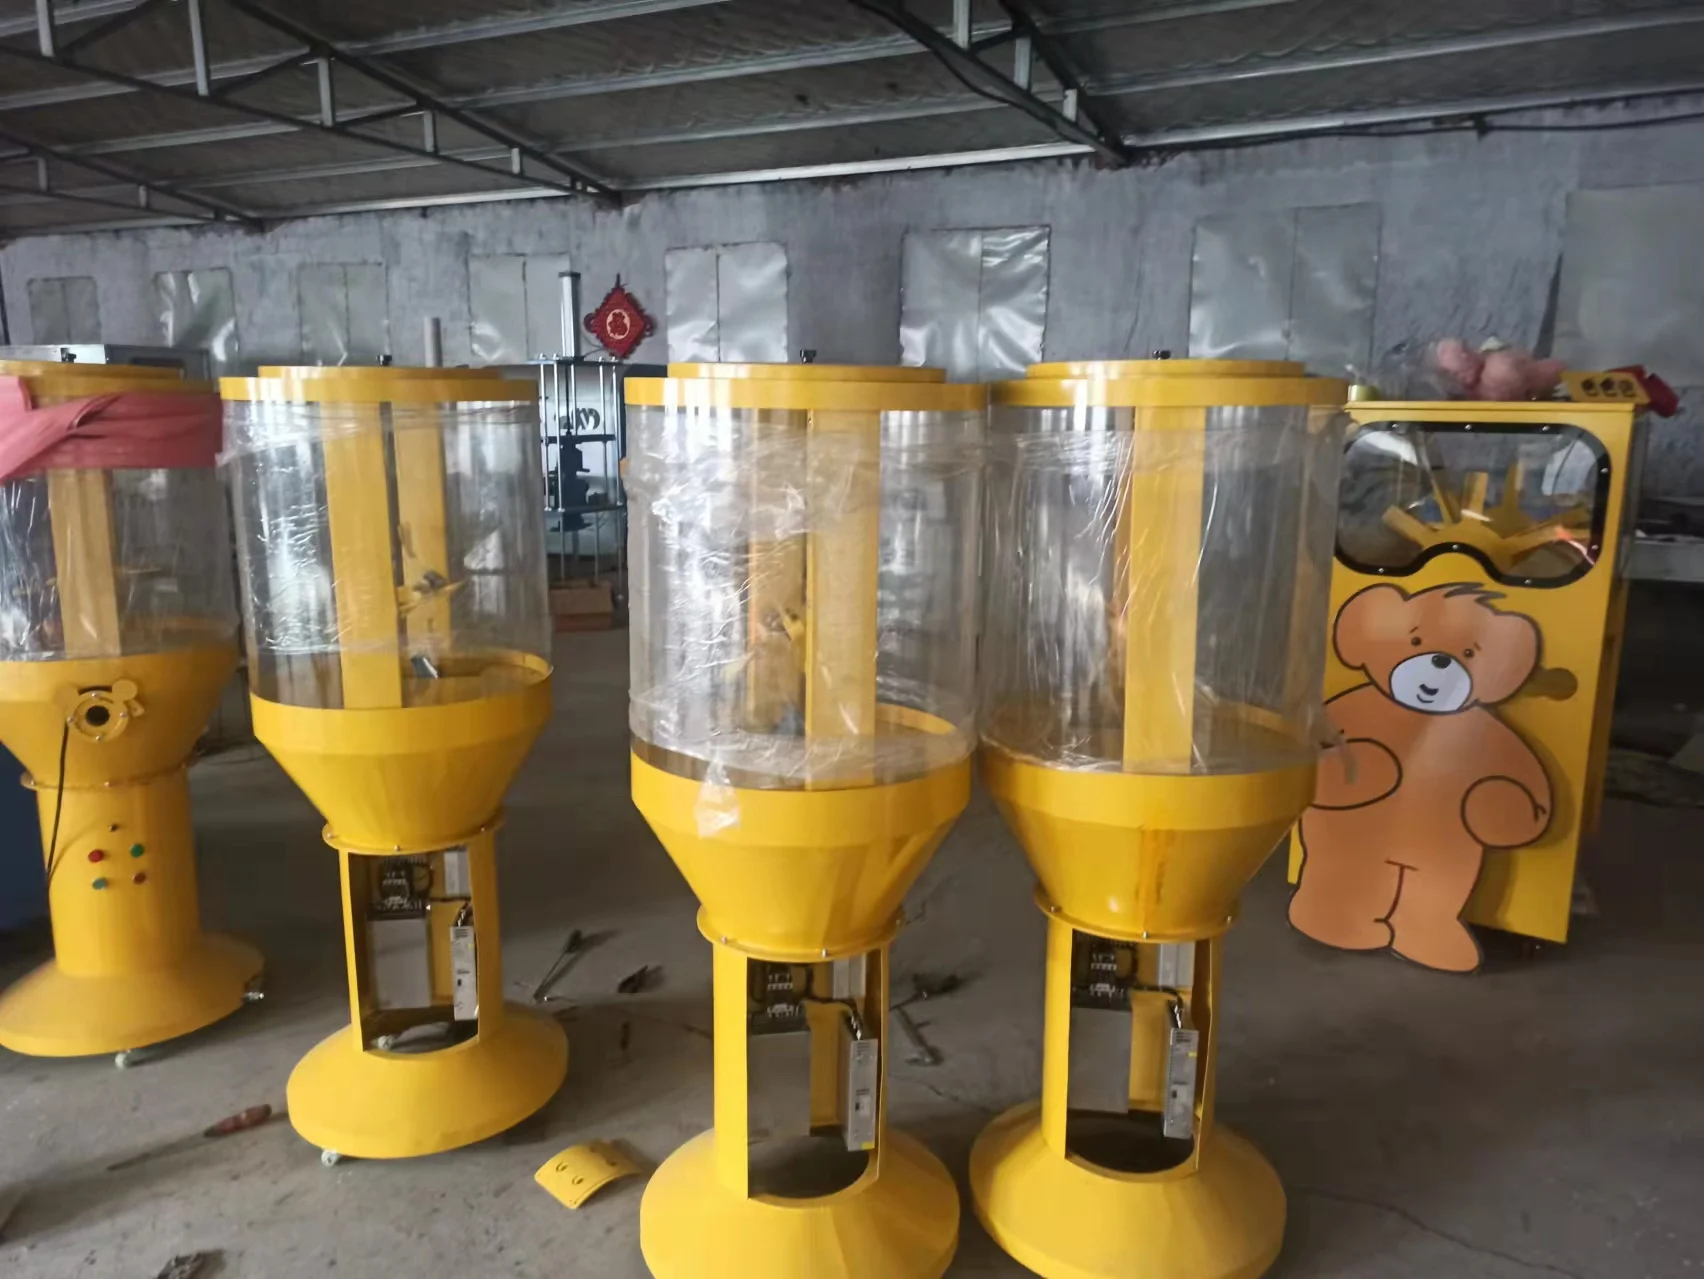 Durable machines de remplissage pour jouets en peluche pour le plaisir et  le divertissement - Alibaba.com